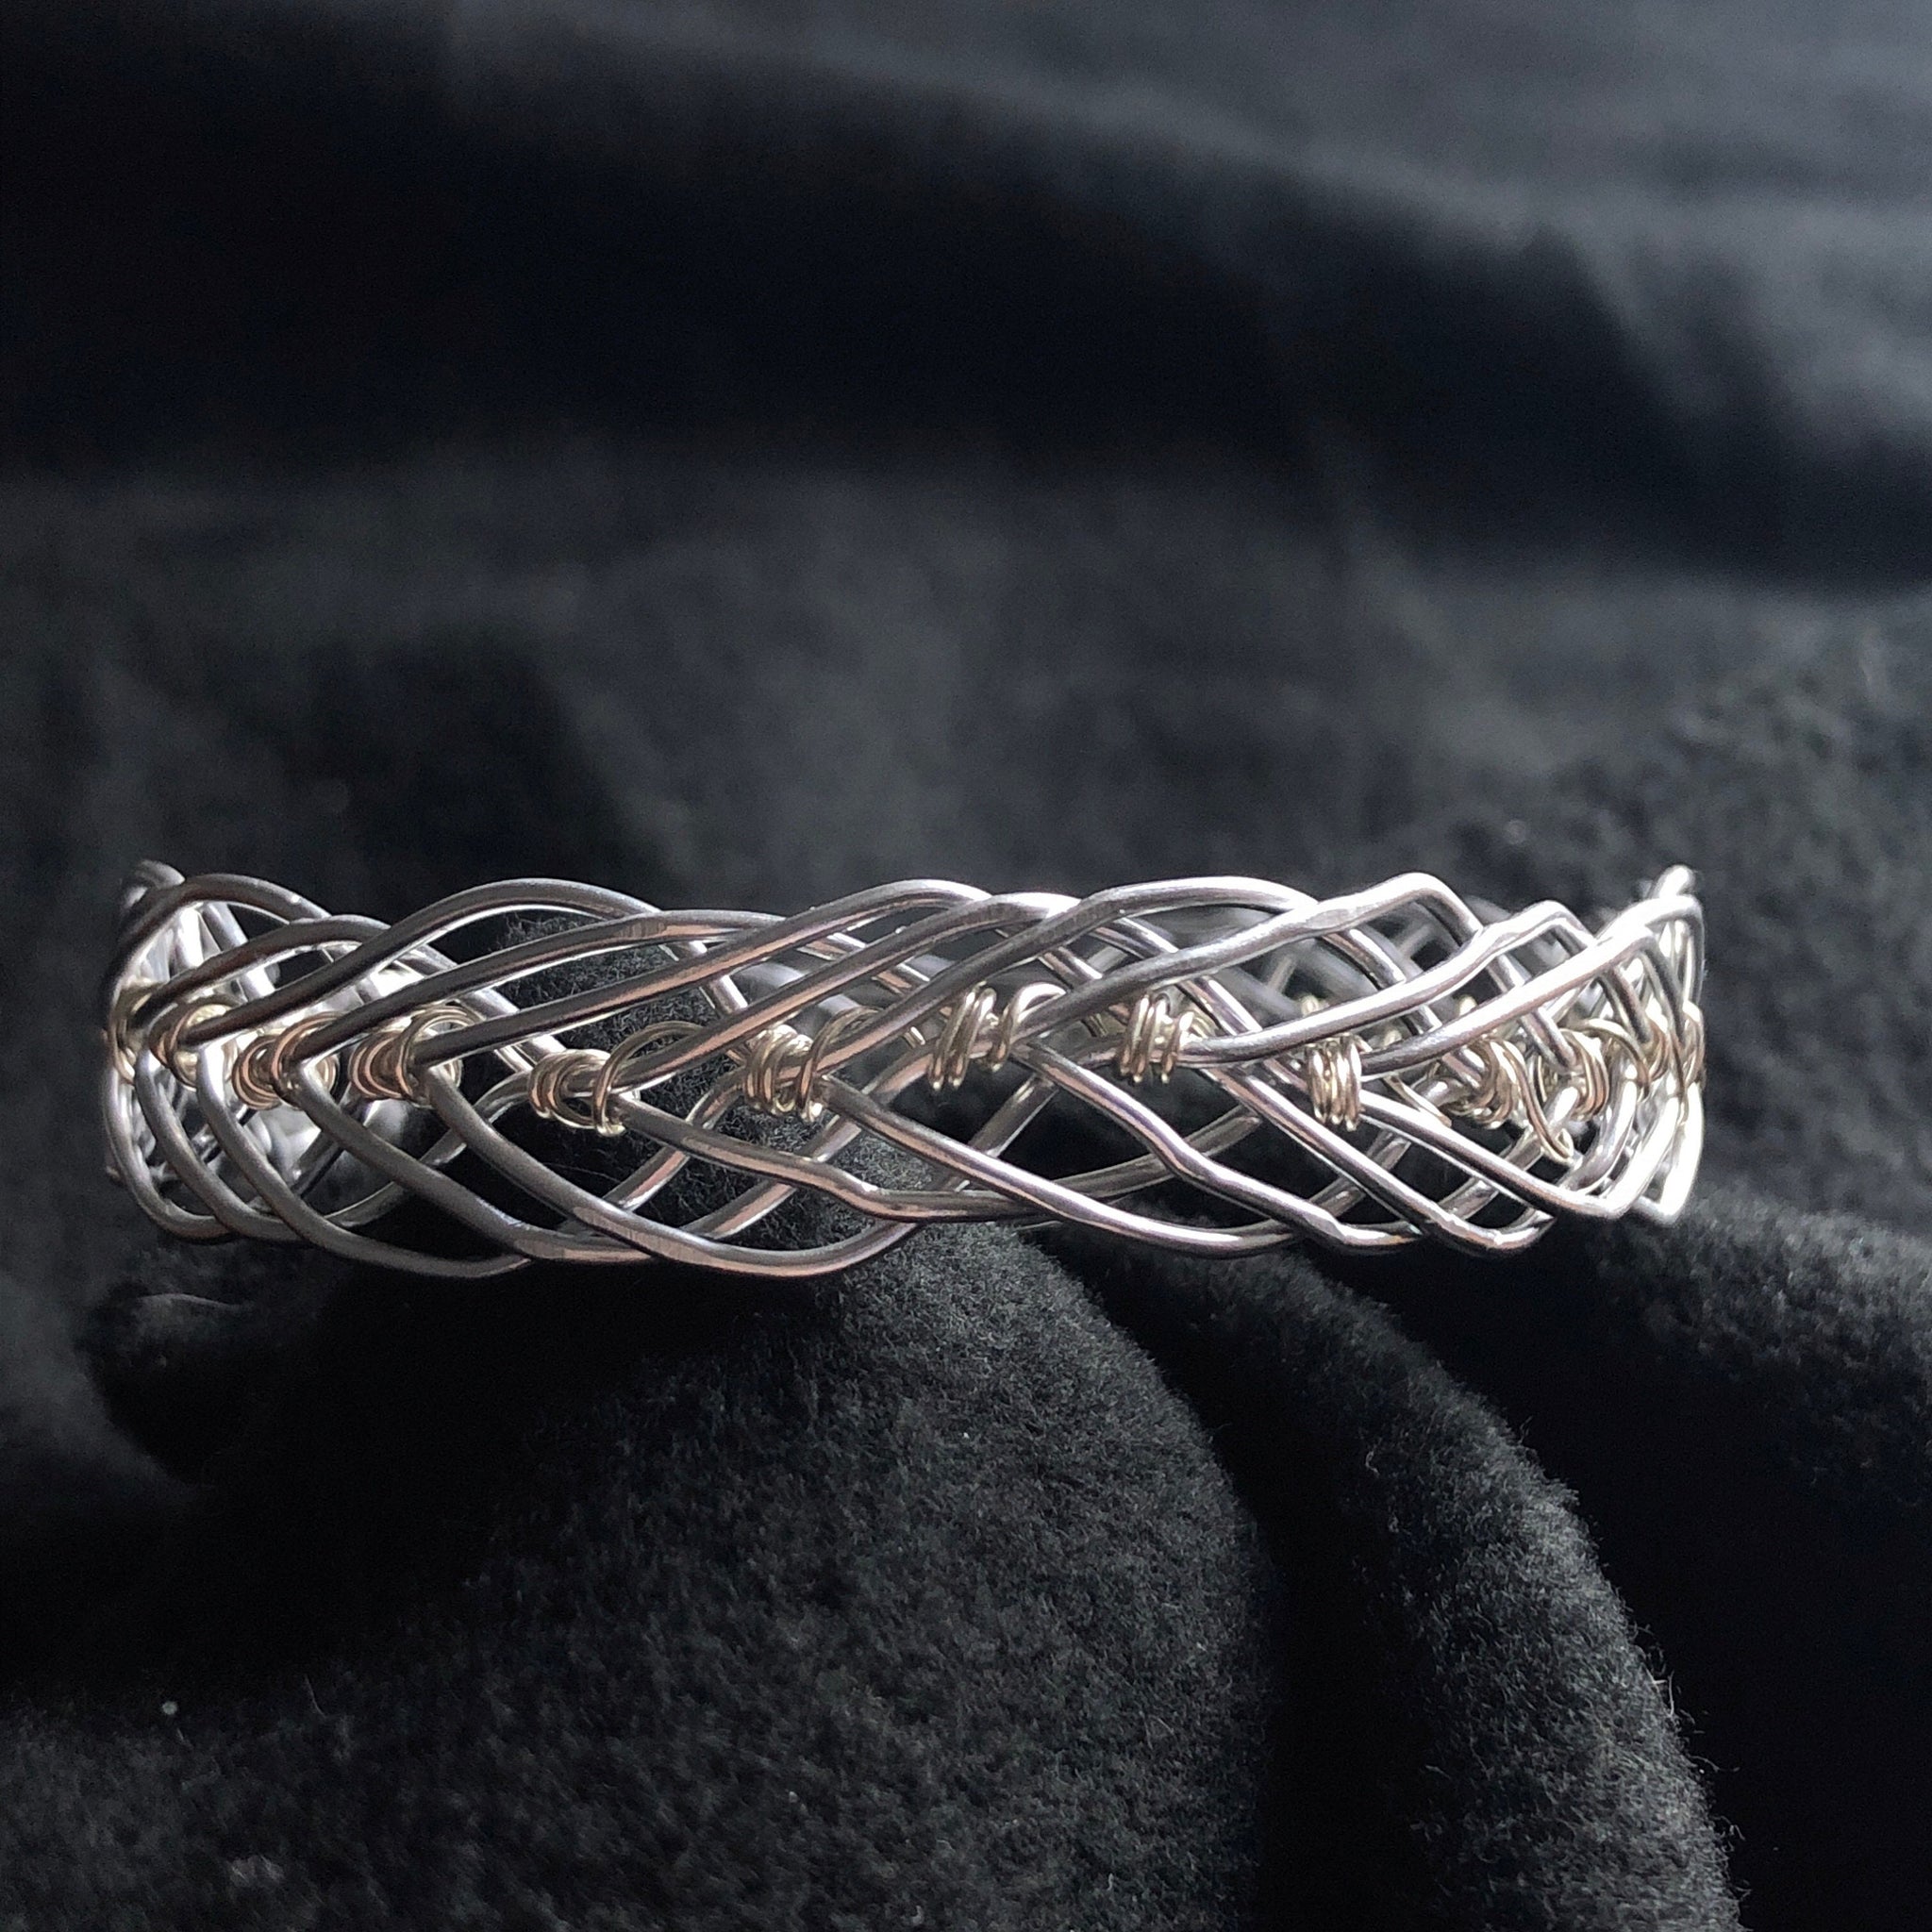 Rhinestone Arm Bracelet - Dance - Wrap Around (Crystal) | Arm bracelets, Arm  bracelets upper, Dance bracelet